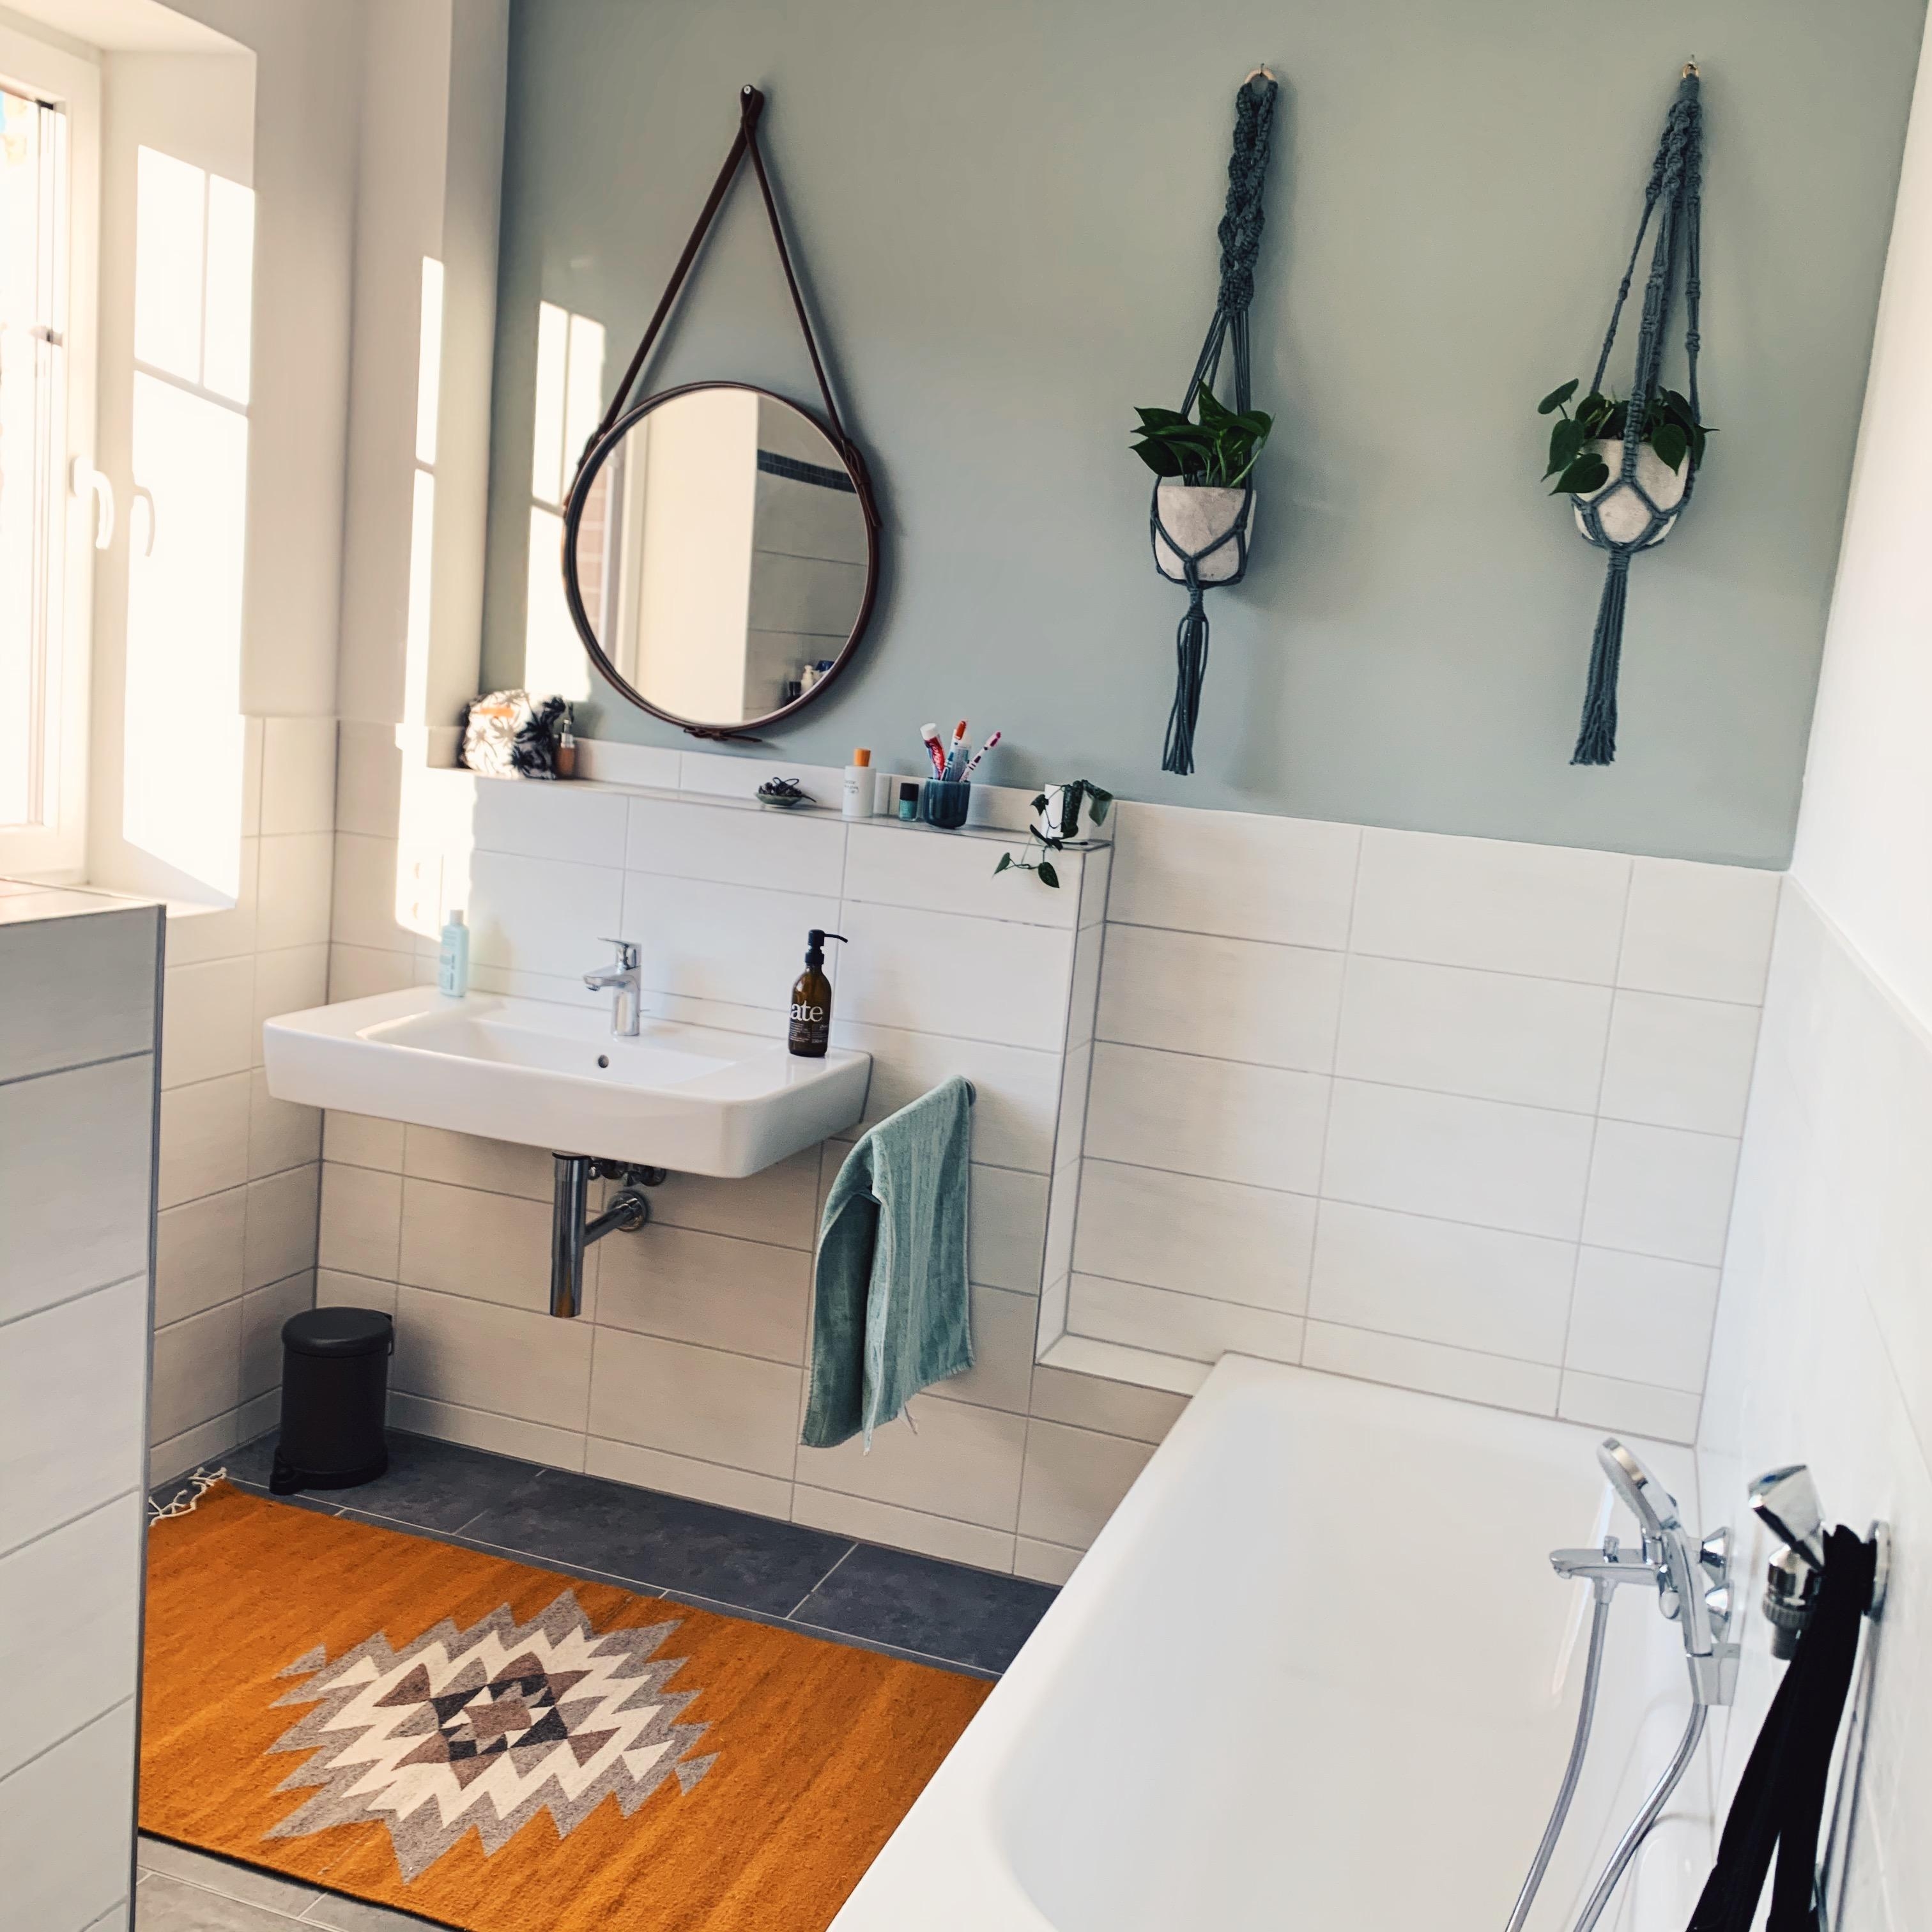 Wir lieben unser neues Badezimmer mit DIY Spiegel und Blumenampeln  #bathroom #livingchallenge